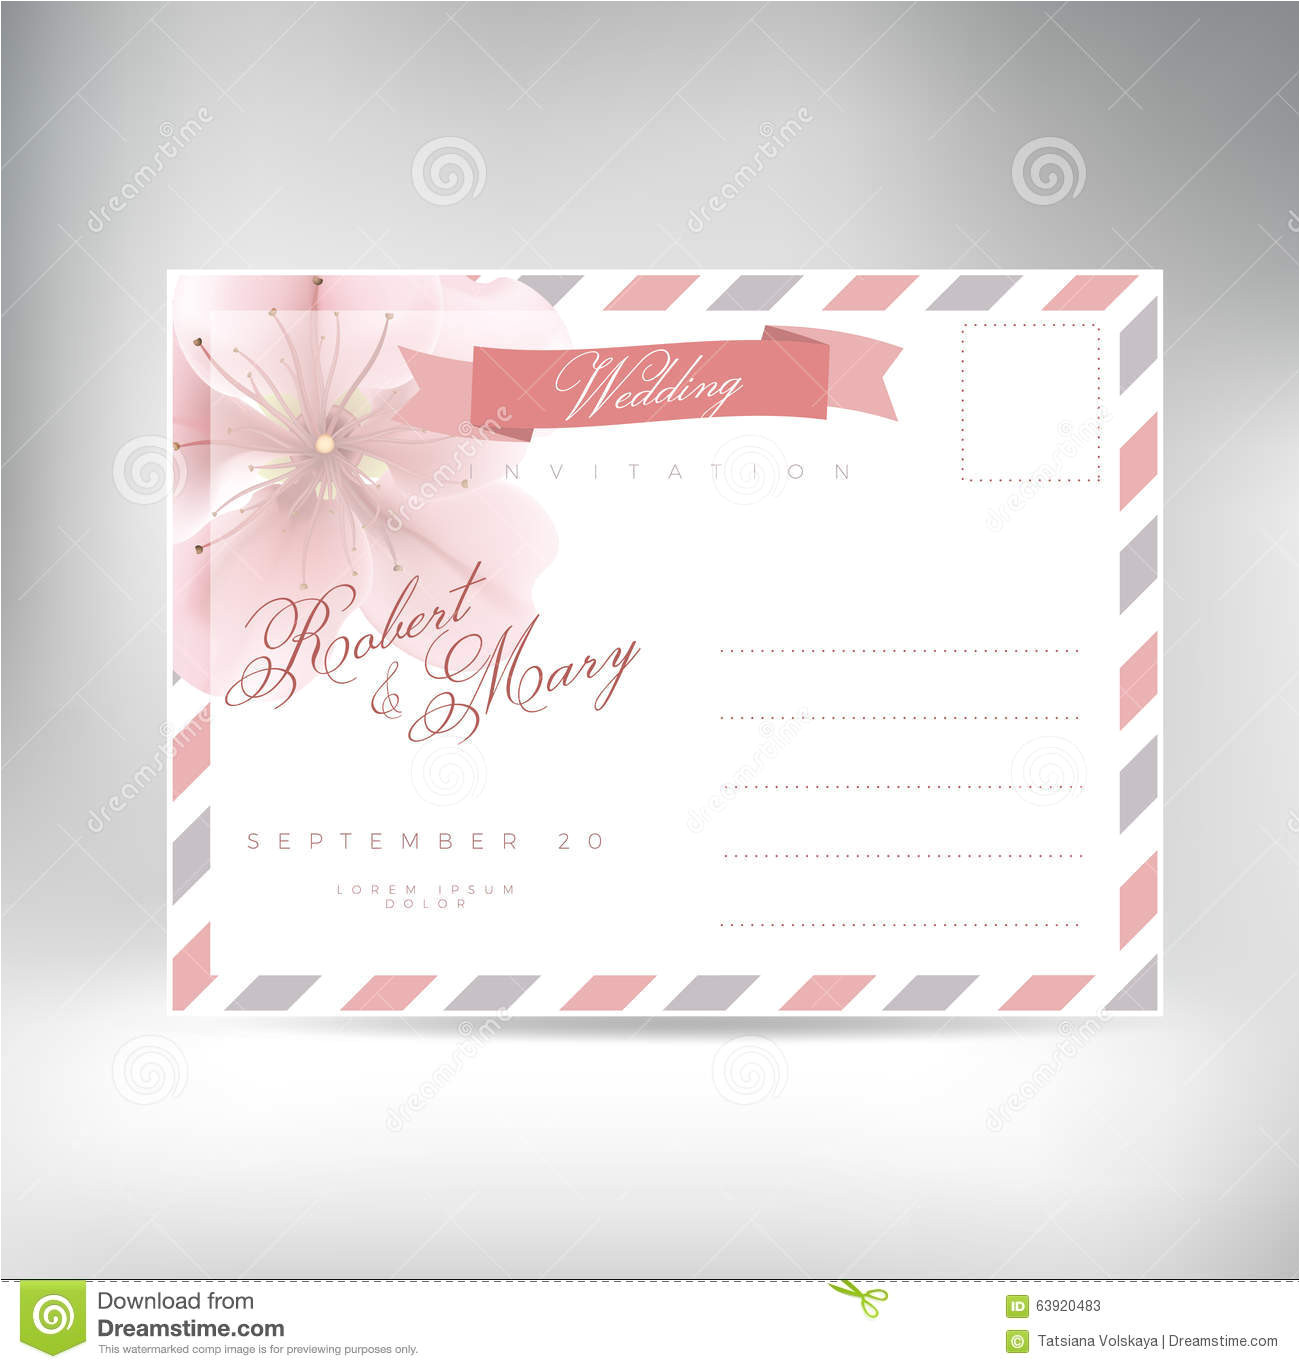 stock illustration vintage postcard background vector template wedding invitation rose flower image63920483